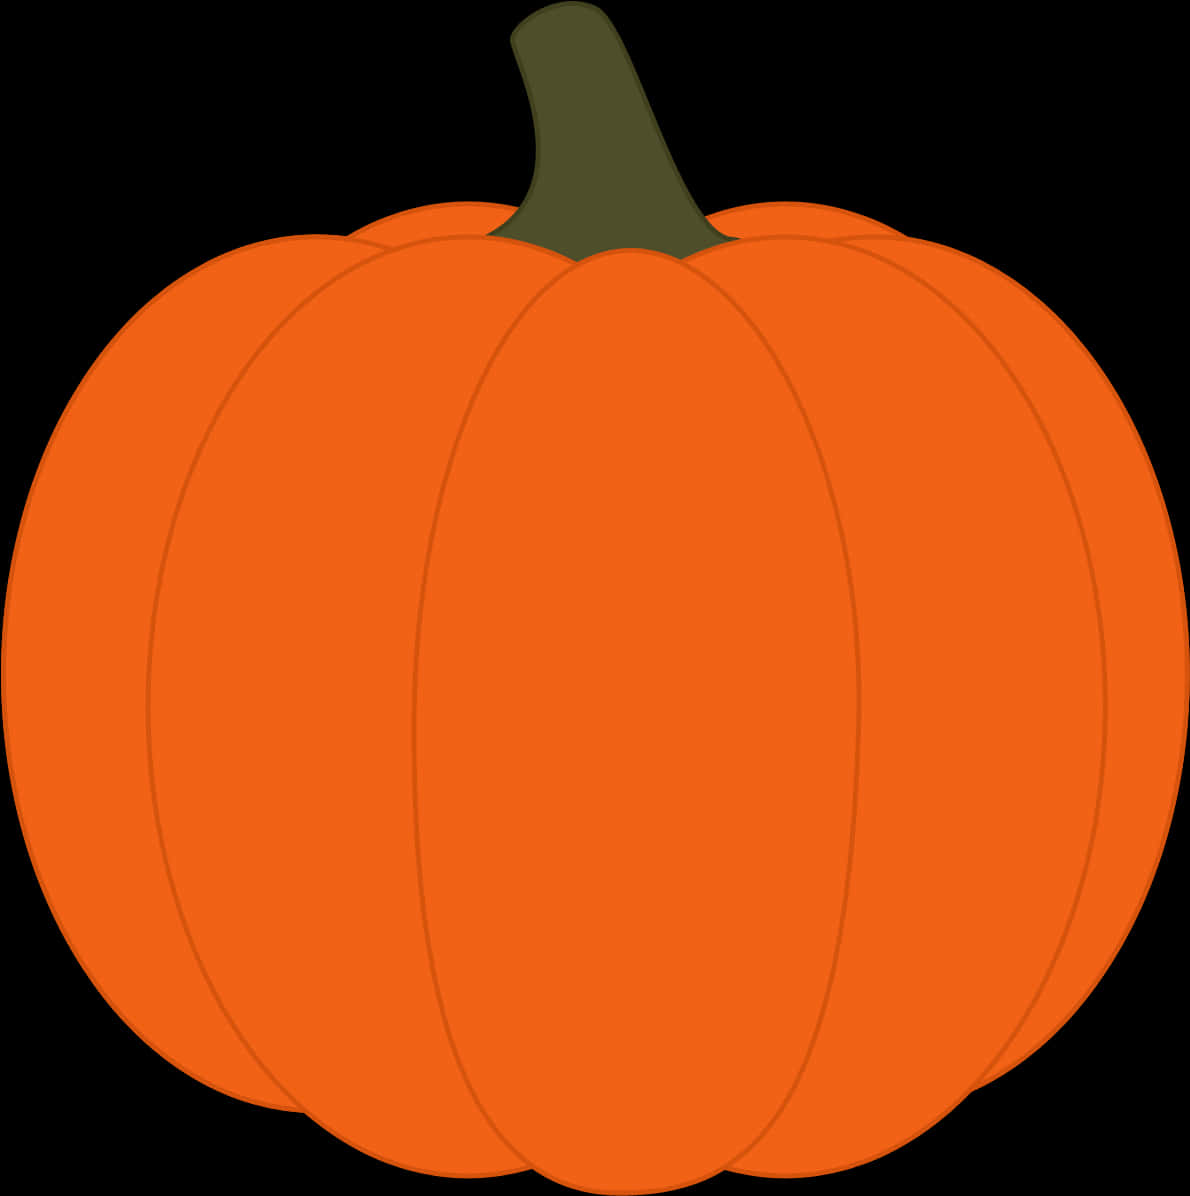 Orange Pumpkin Vector Illustration PNG image